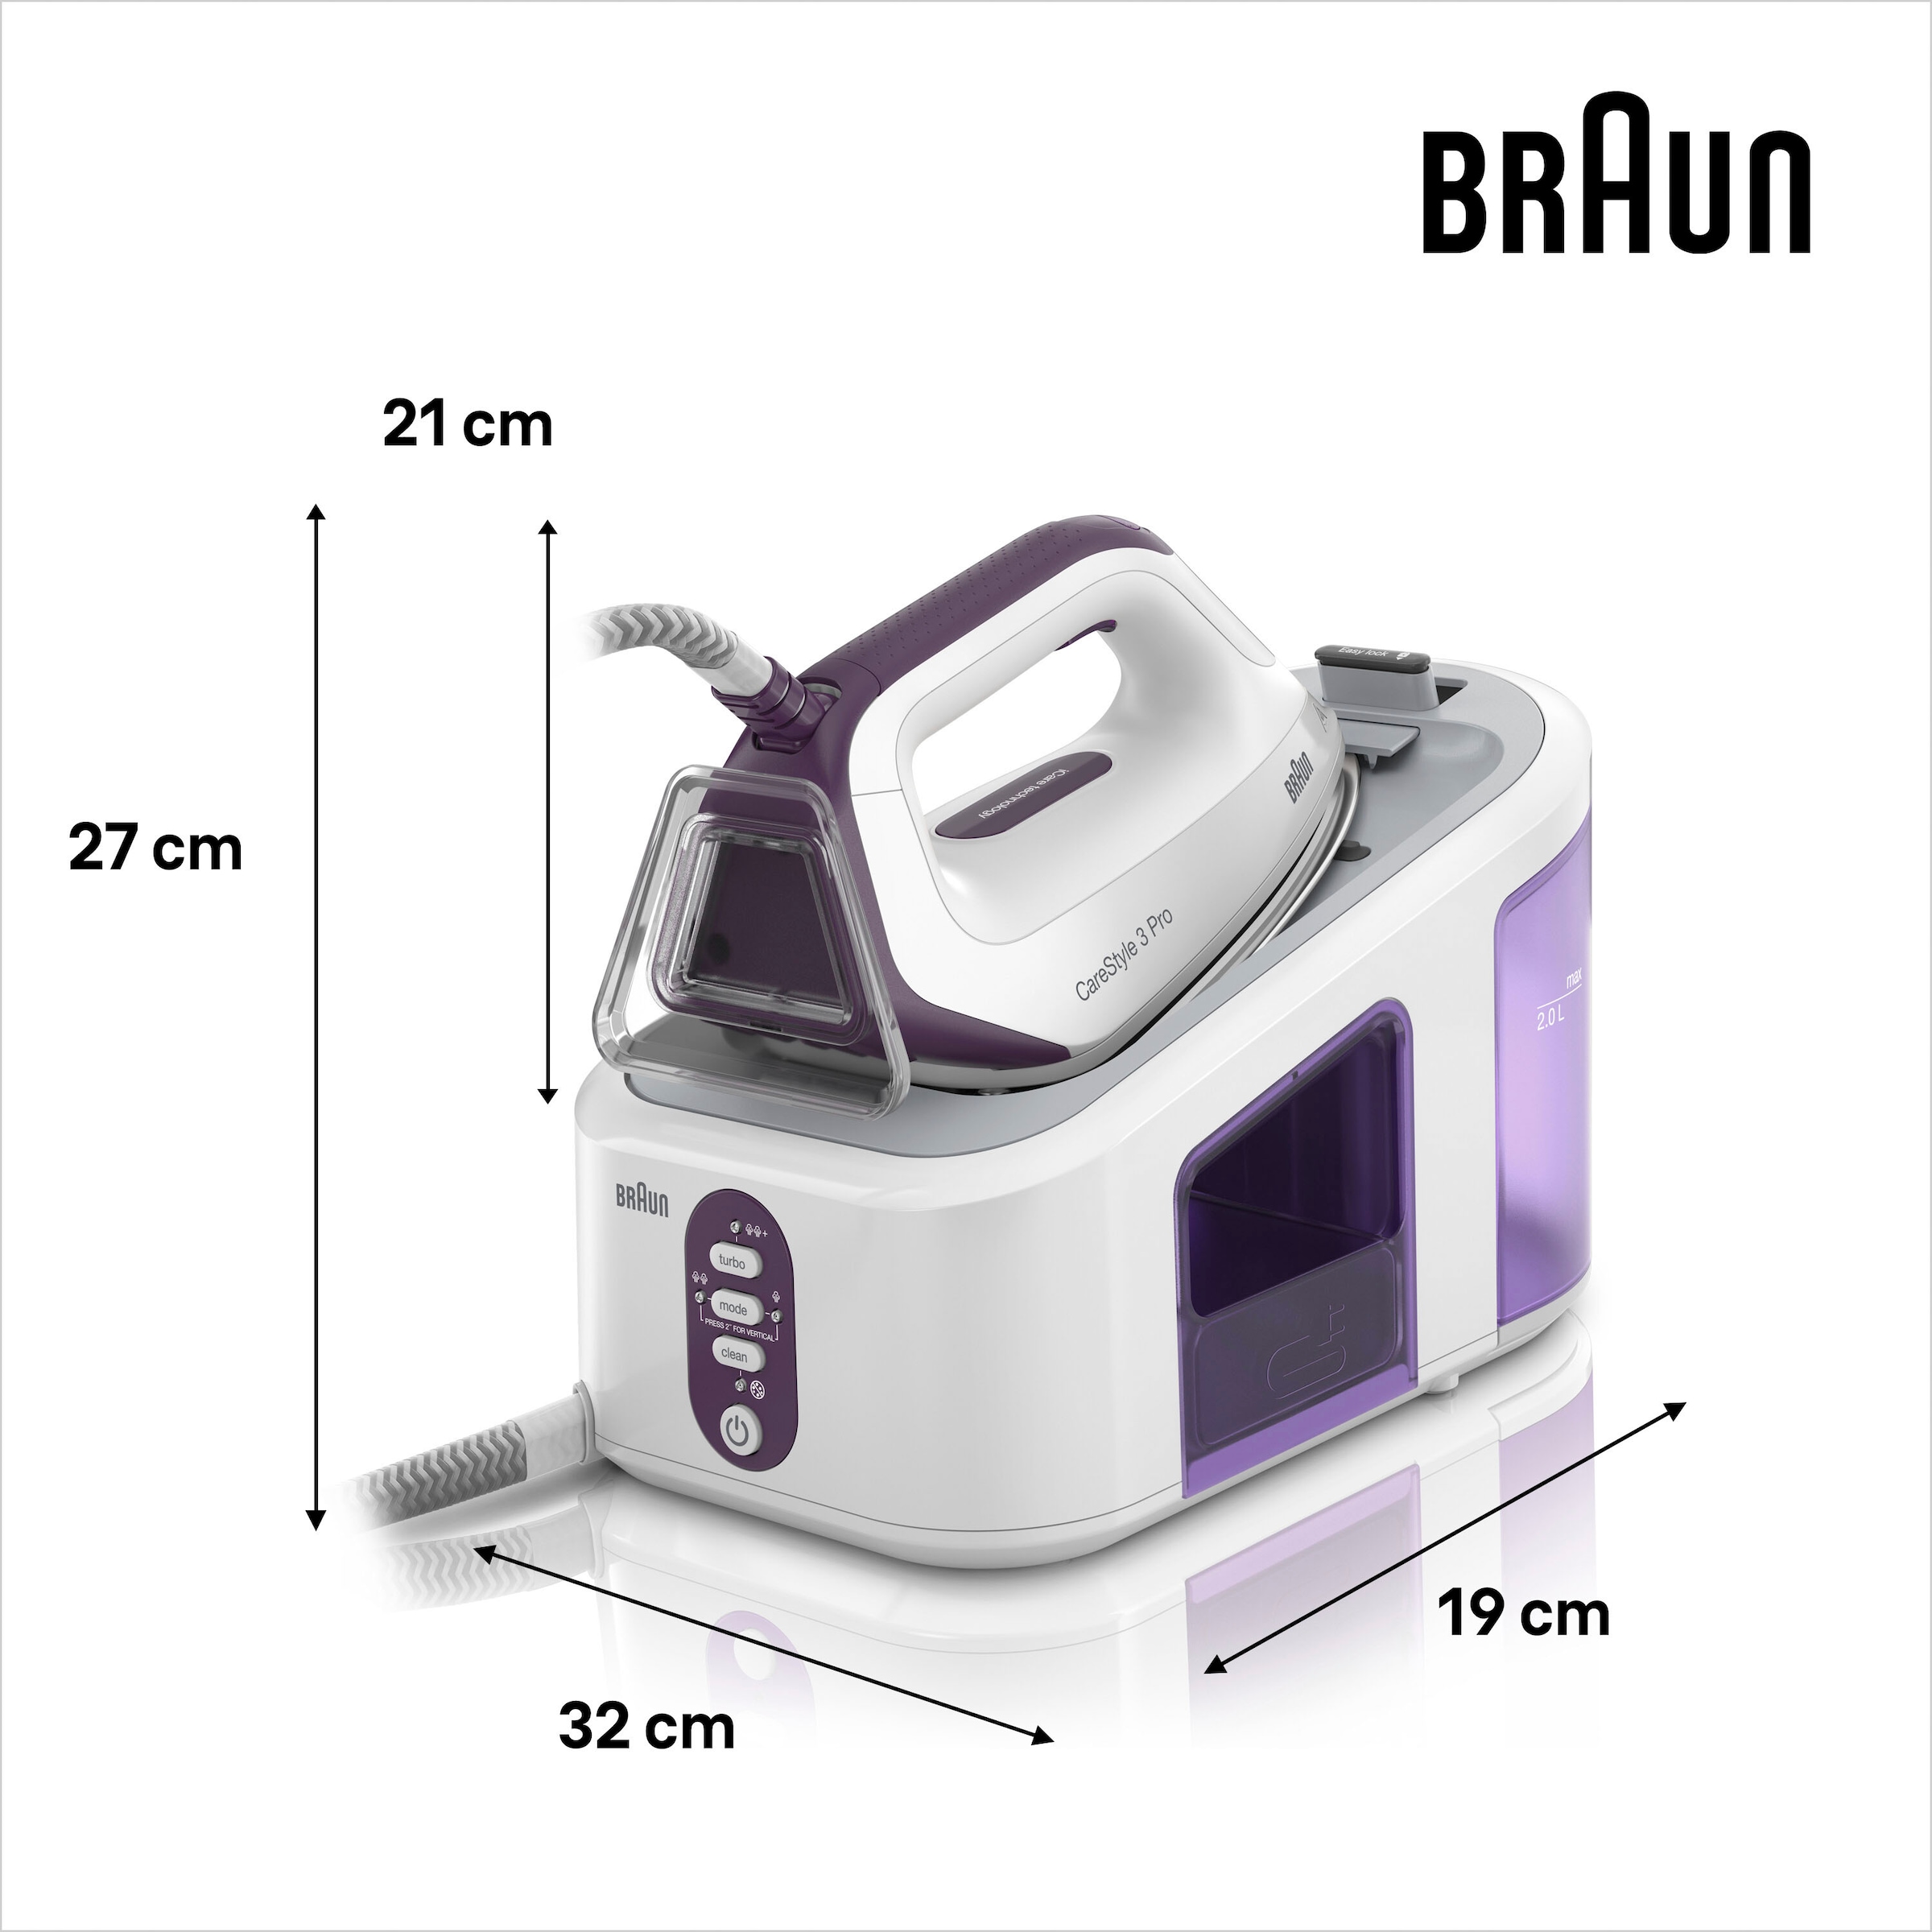 Braun Dampfbügelstation »CareStyle IS 3155«, violett, max. Dampfmenge  430g/min, Rückwärtsbügeln über Knöpfe online kaufen